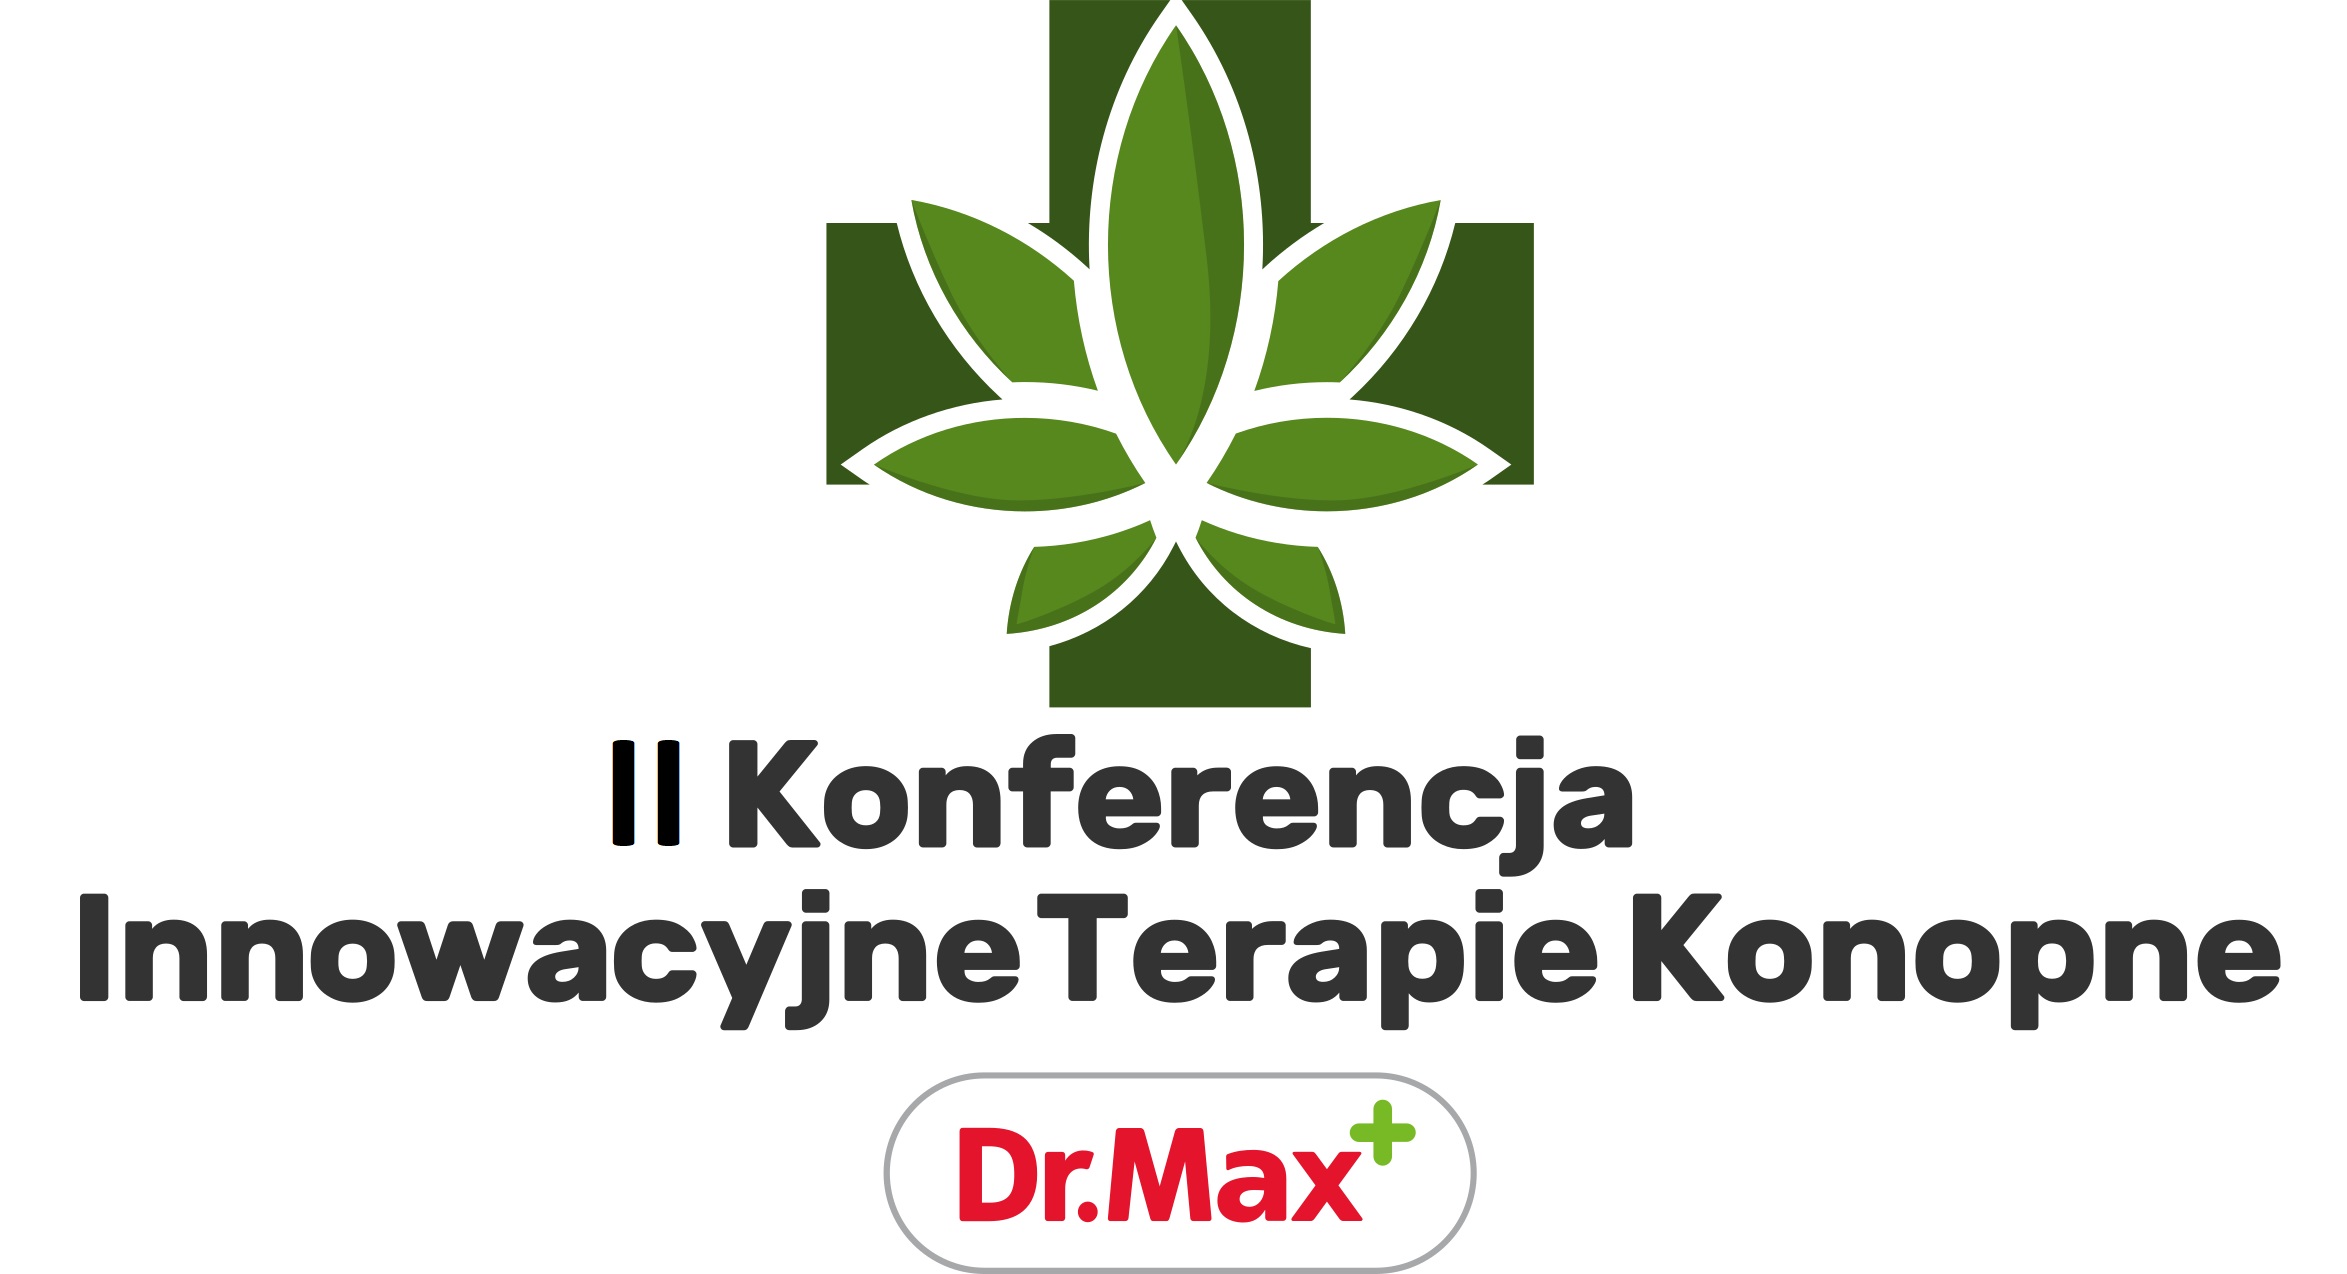 II Konferencja ,,Innowacyjne Terapie Konopne Dr. Max"